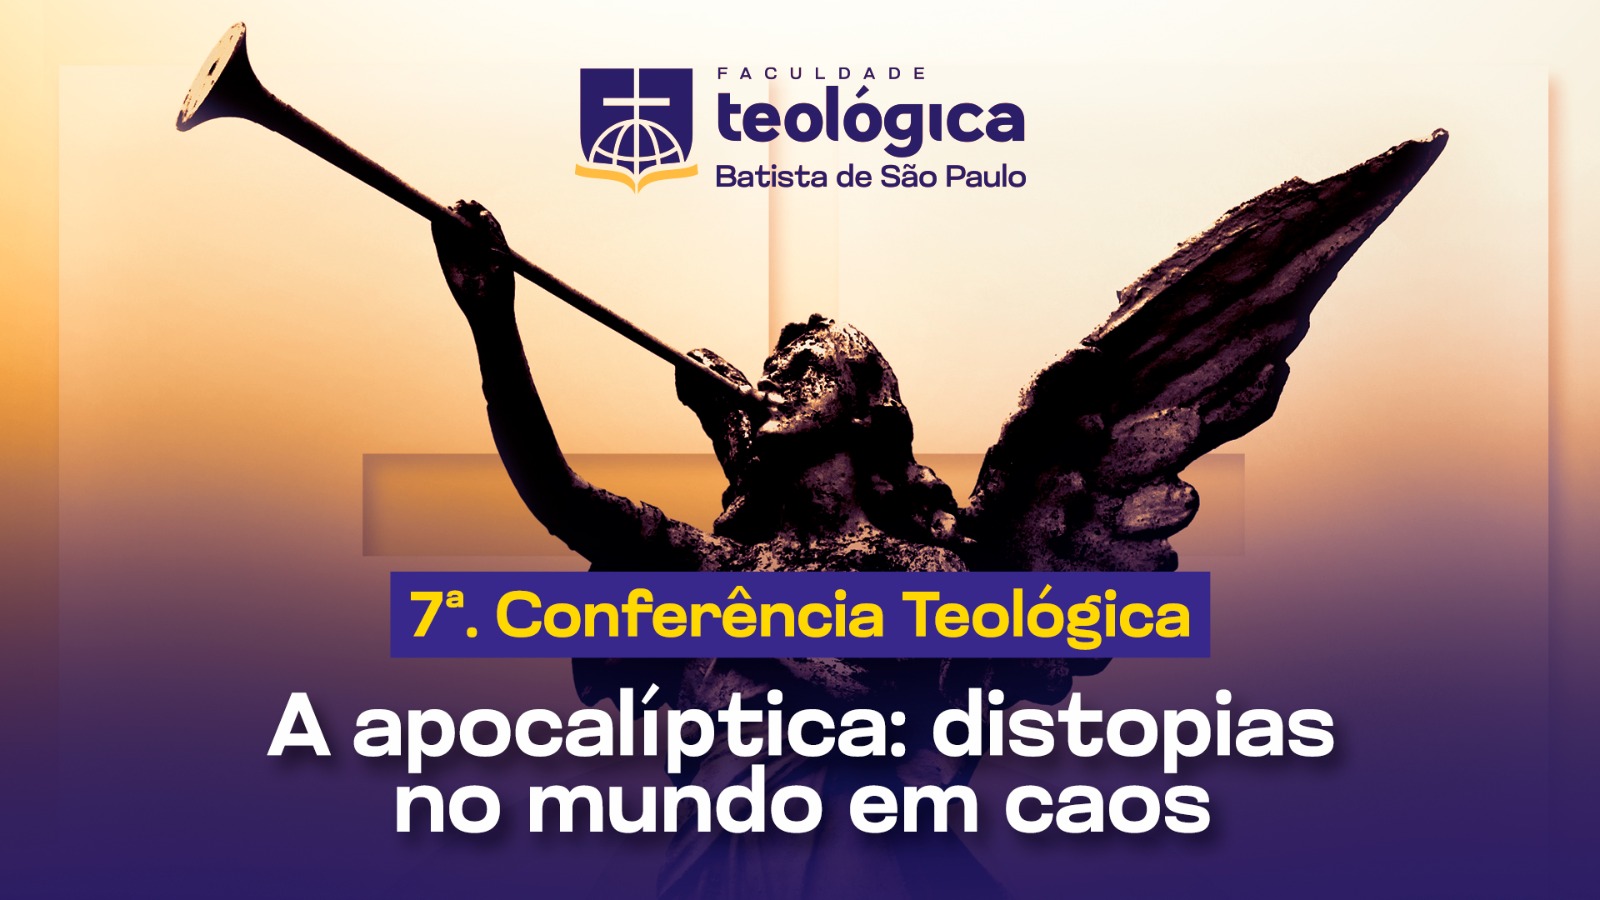 Conferencia teológica apocalipitica topo